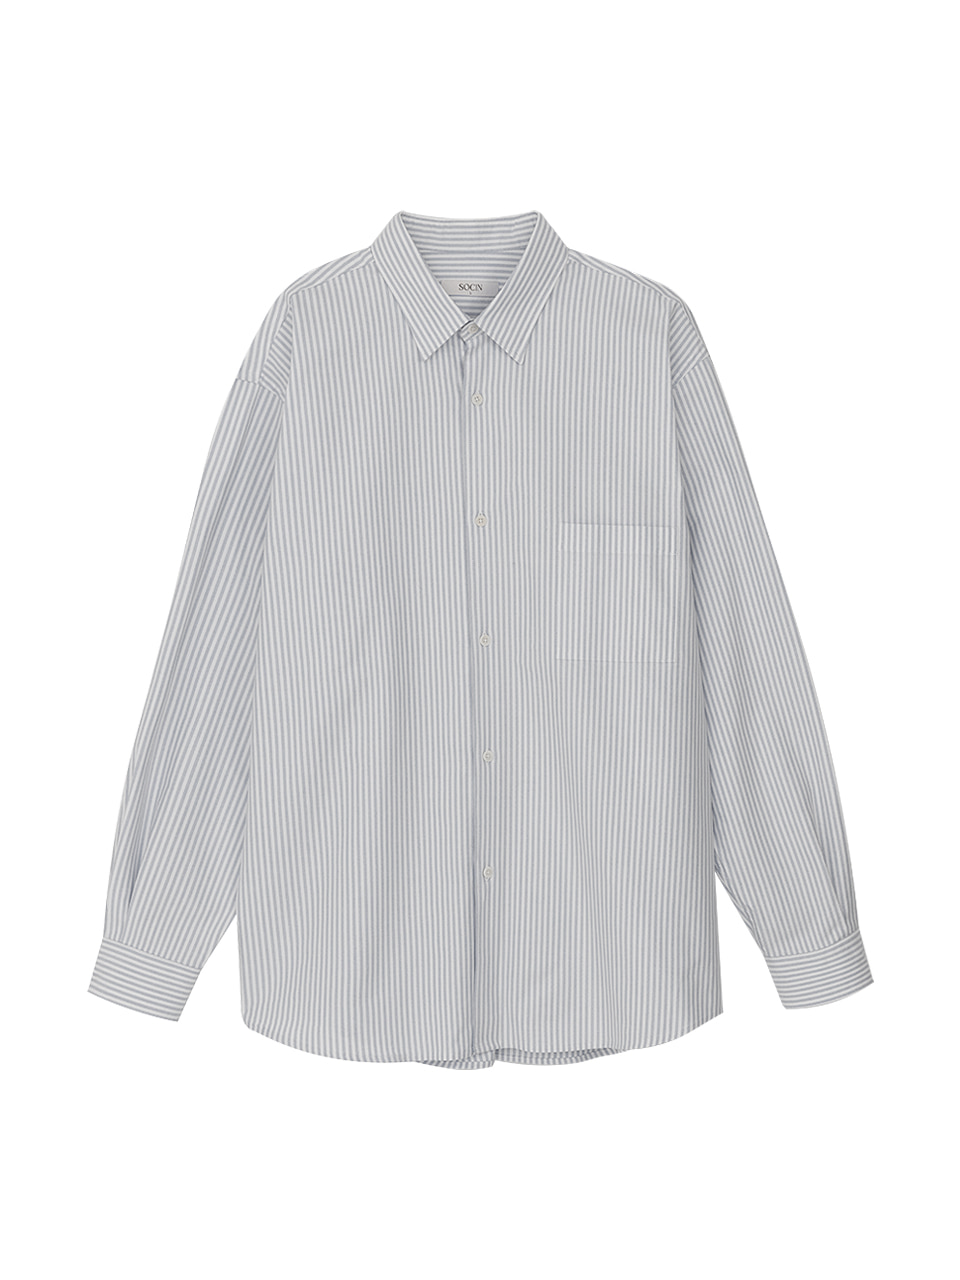 Oxford Stripe Shirt (Gray)